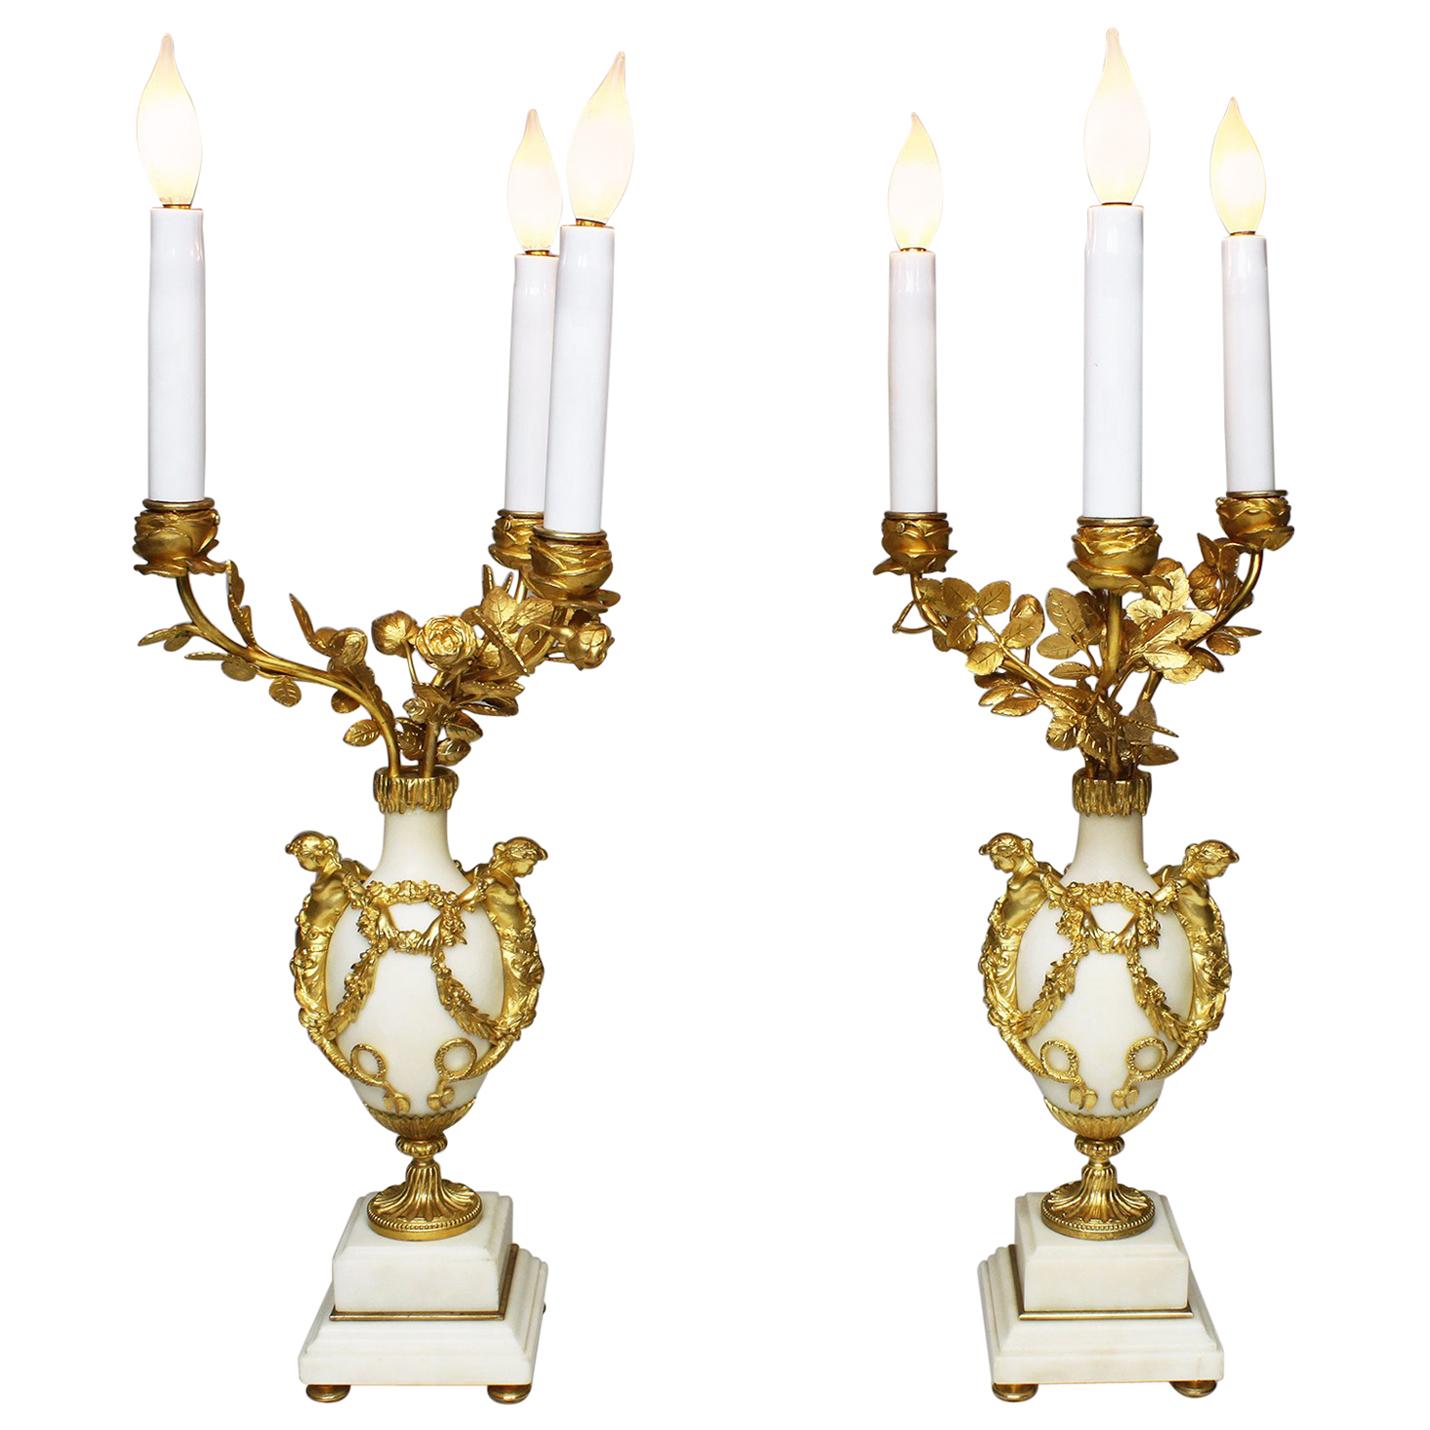 Paire de candélabres français du 19ème siècle montés sur marbre et bronze doré